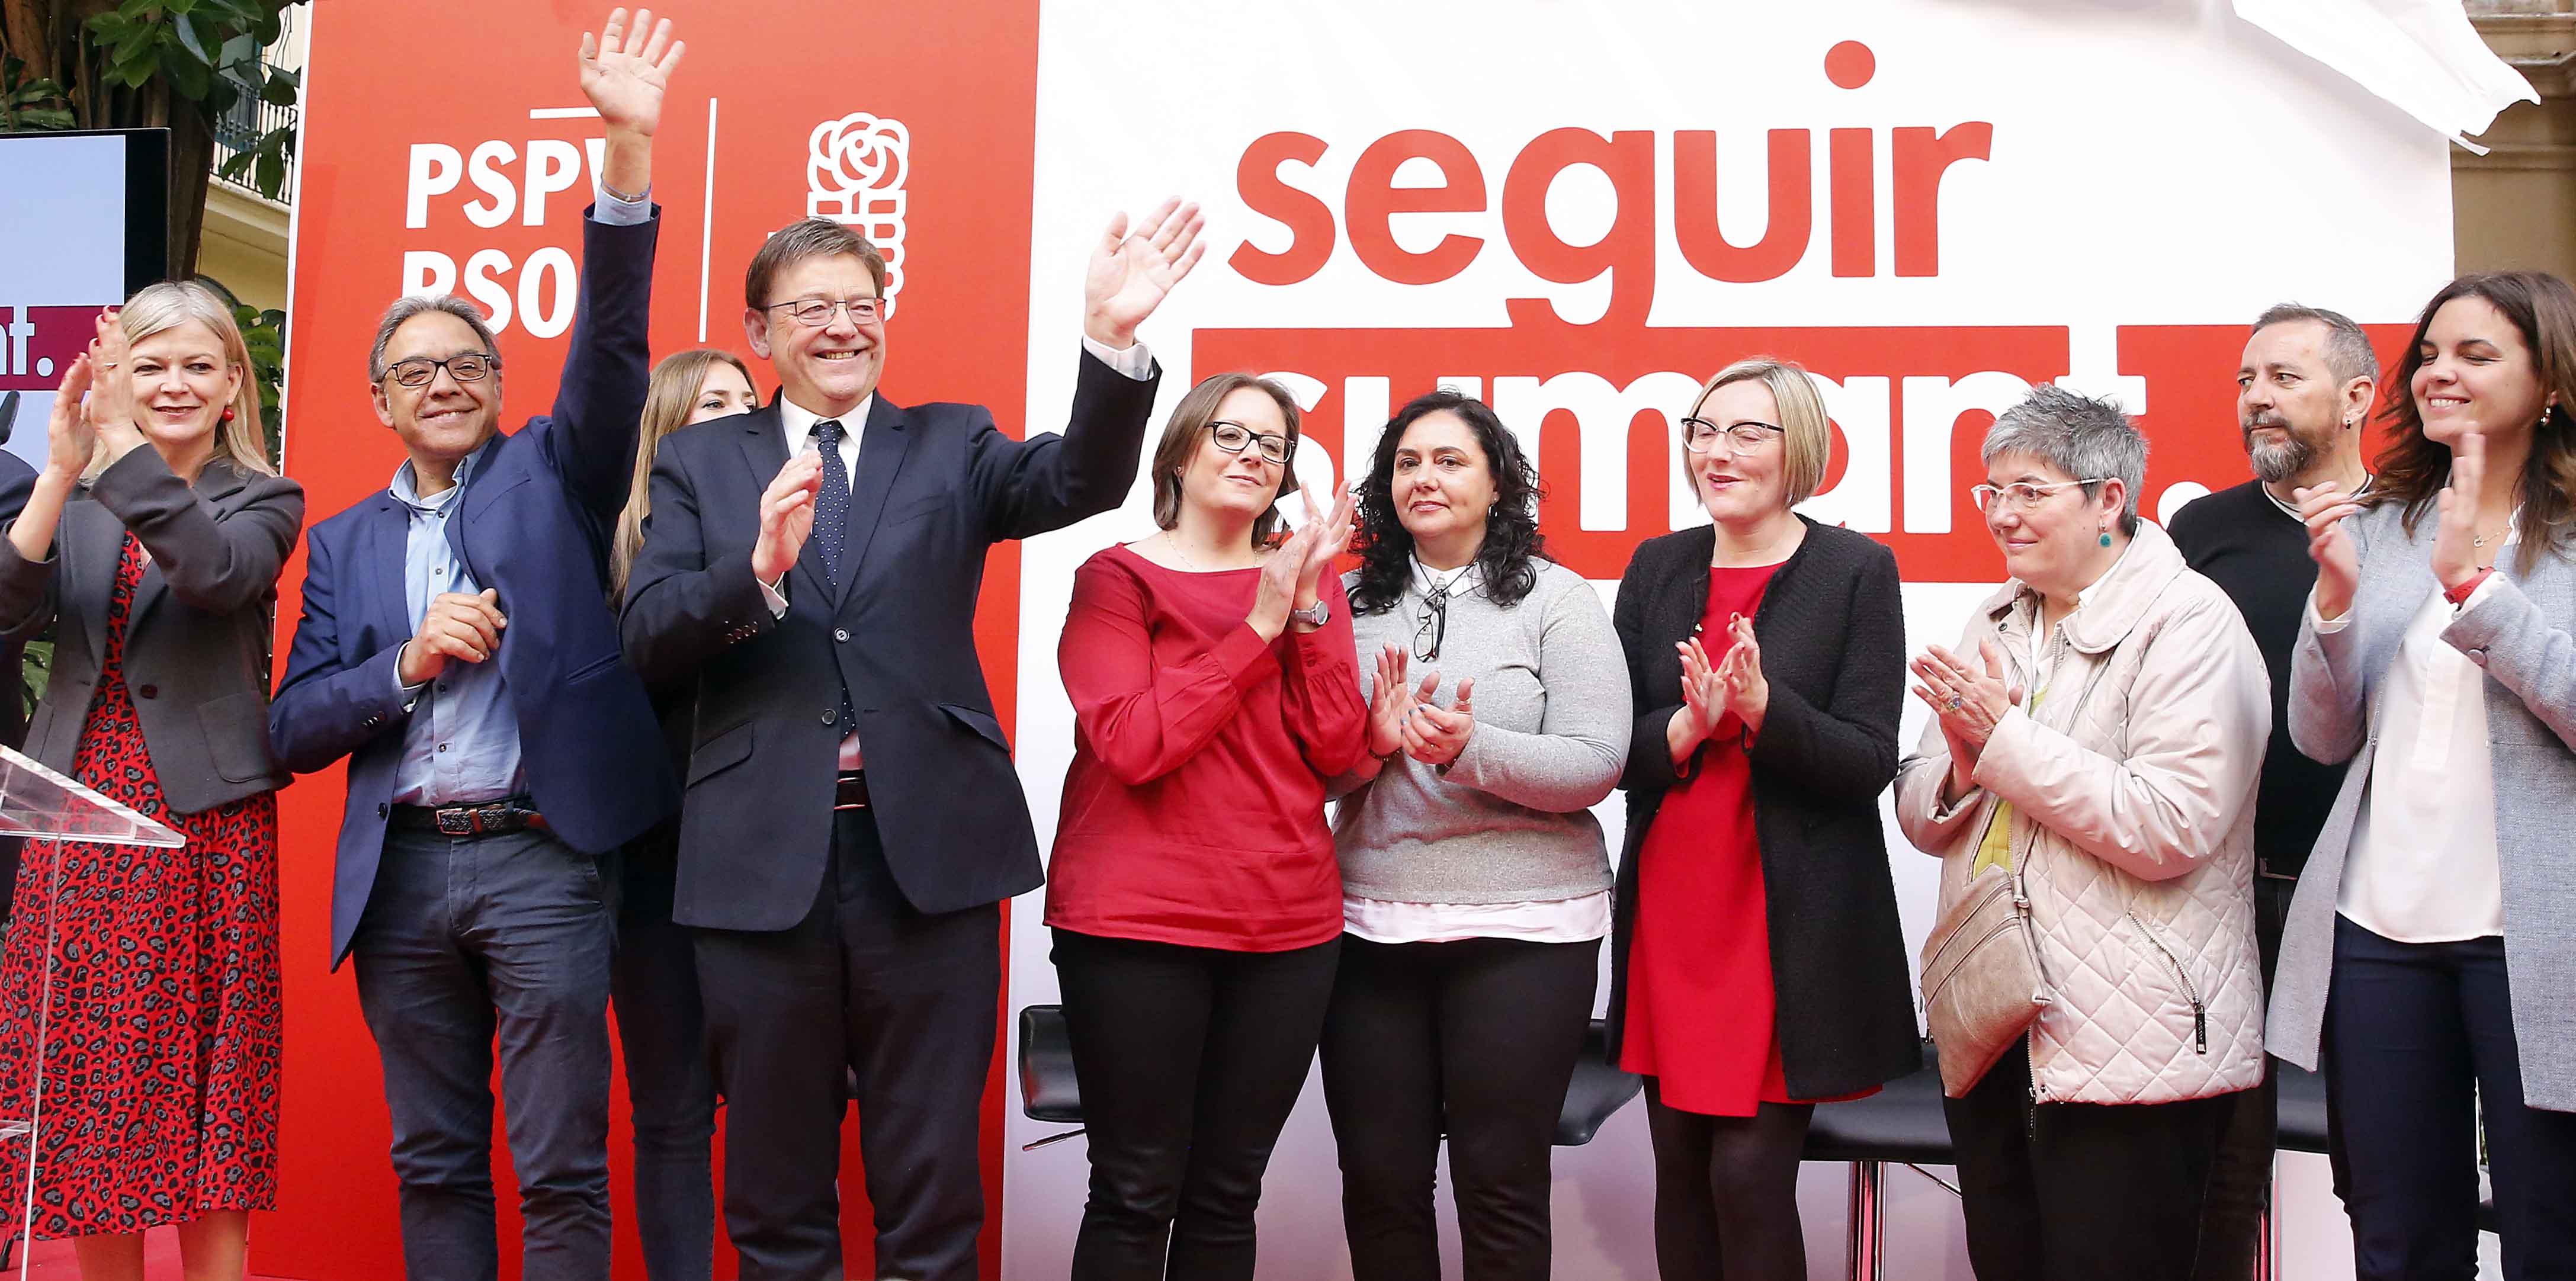 You are currently viewing ‘Seguir sumant”, lema dels socialistes valencians per a les eleccions autonòmiques del 28 d’abril